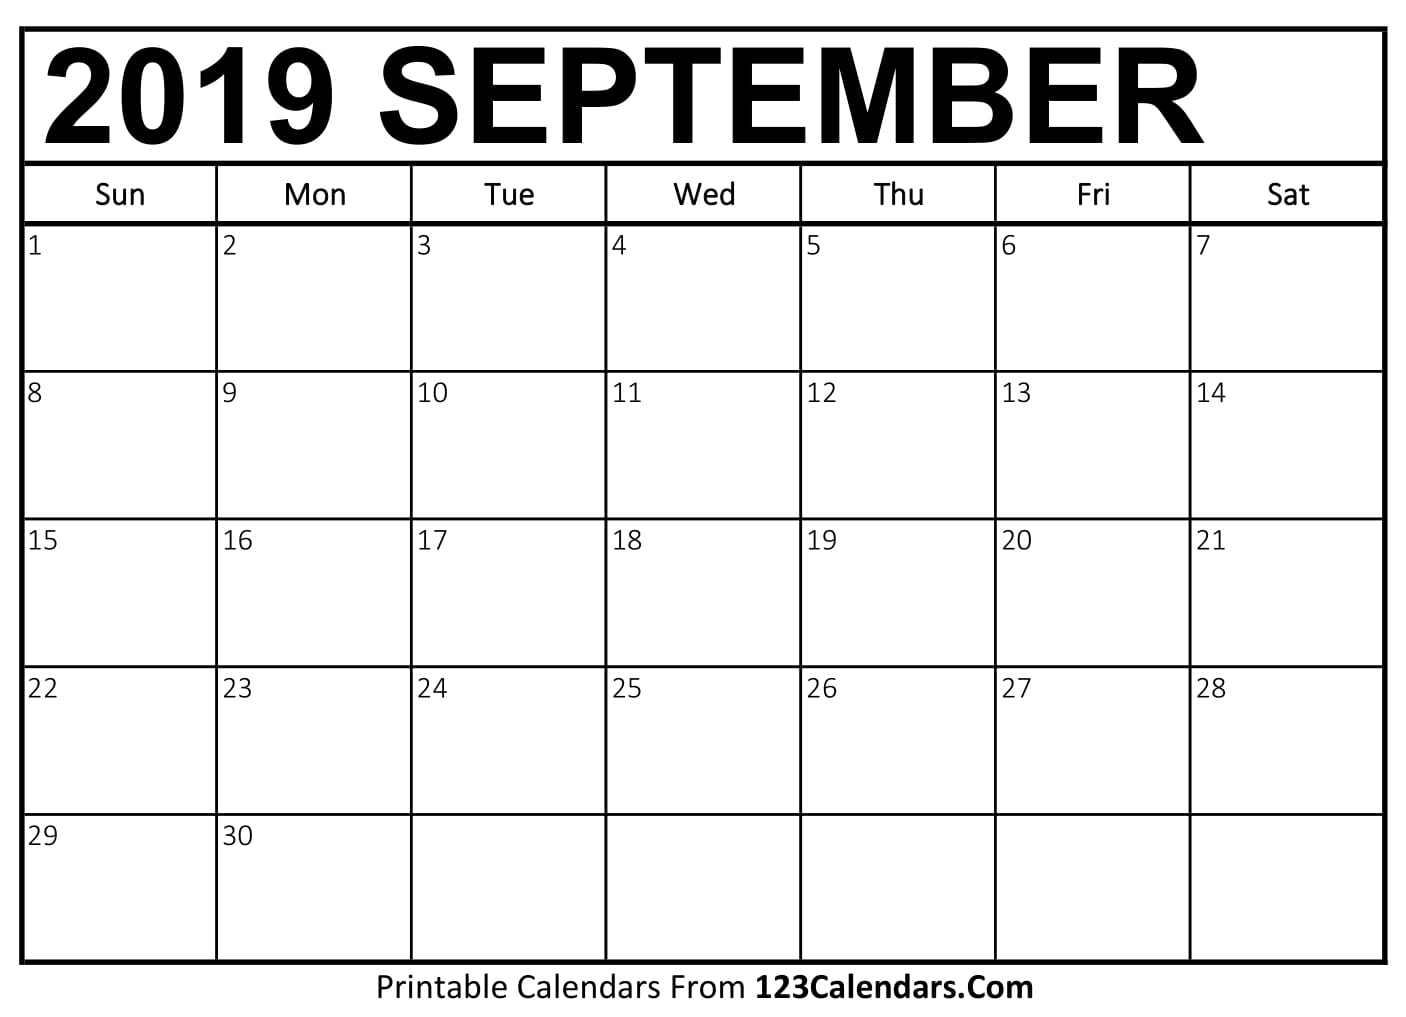 september-2019-calendar-blank-easily-printable-123calendars